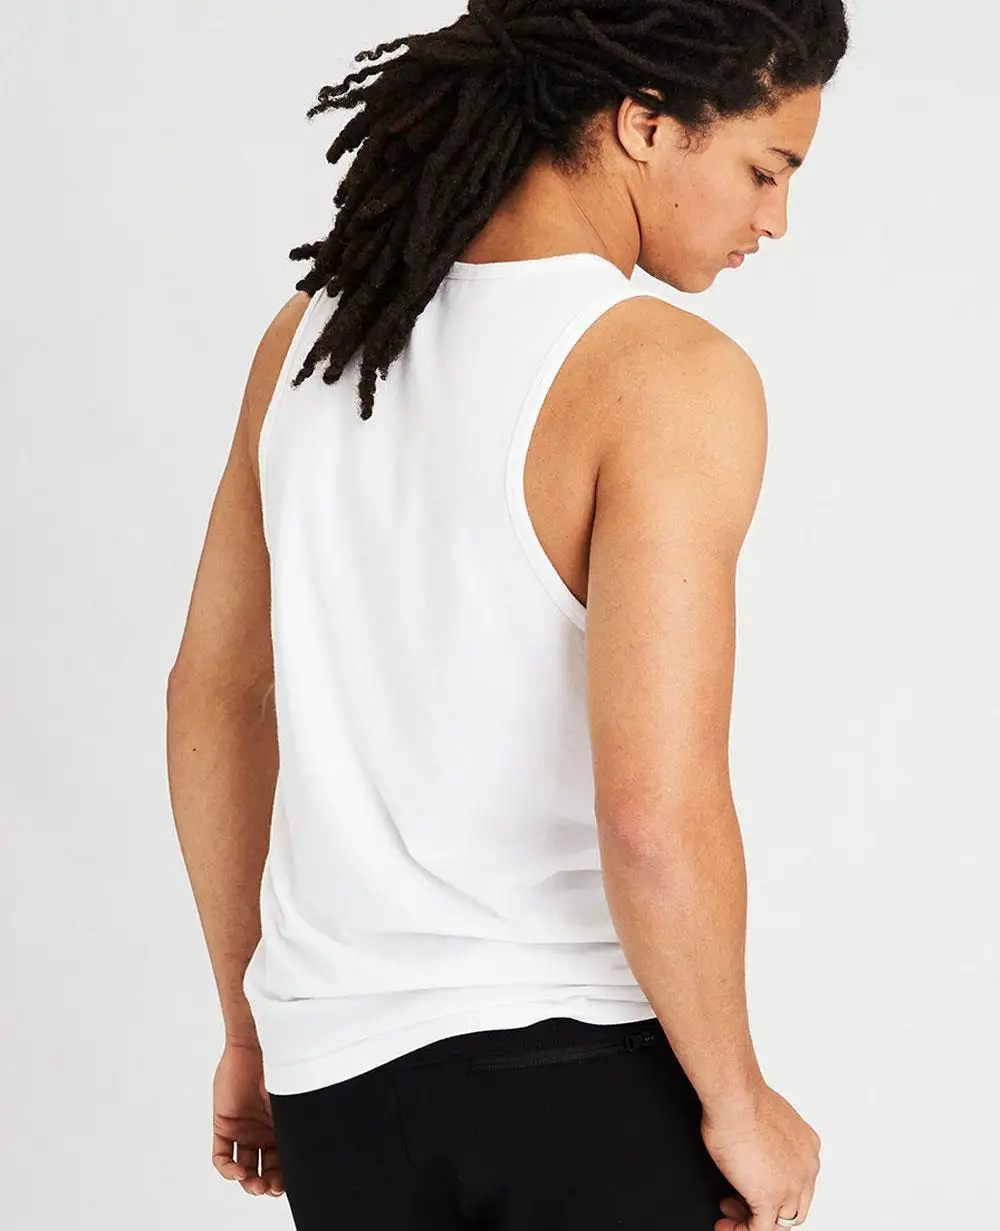 Camiseta sin mangas de musculación para hombre, equipo de musculación ligero y ligero